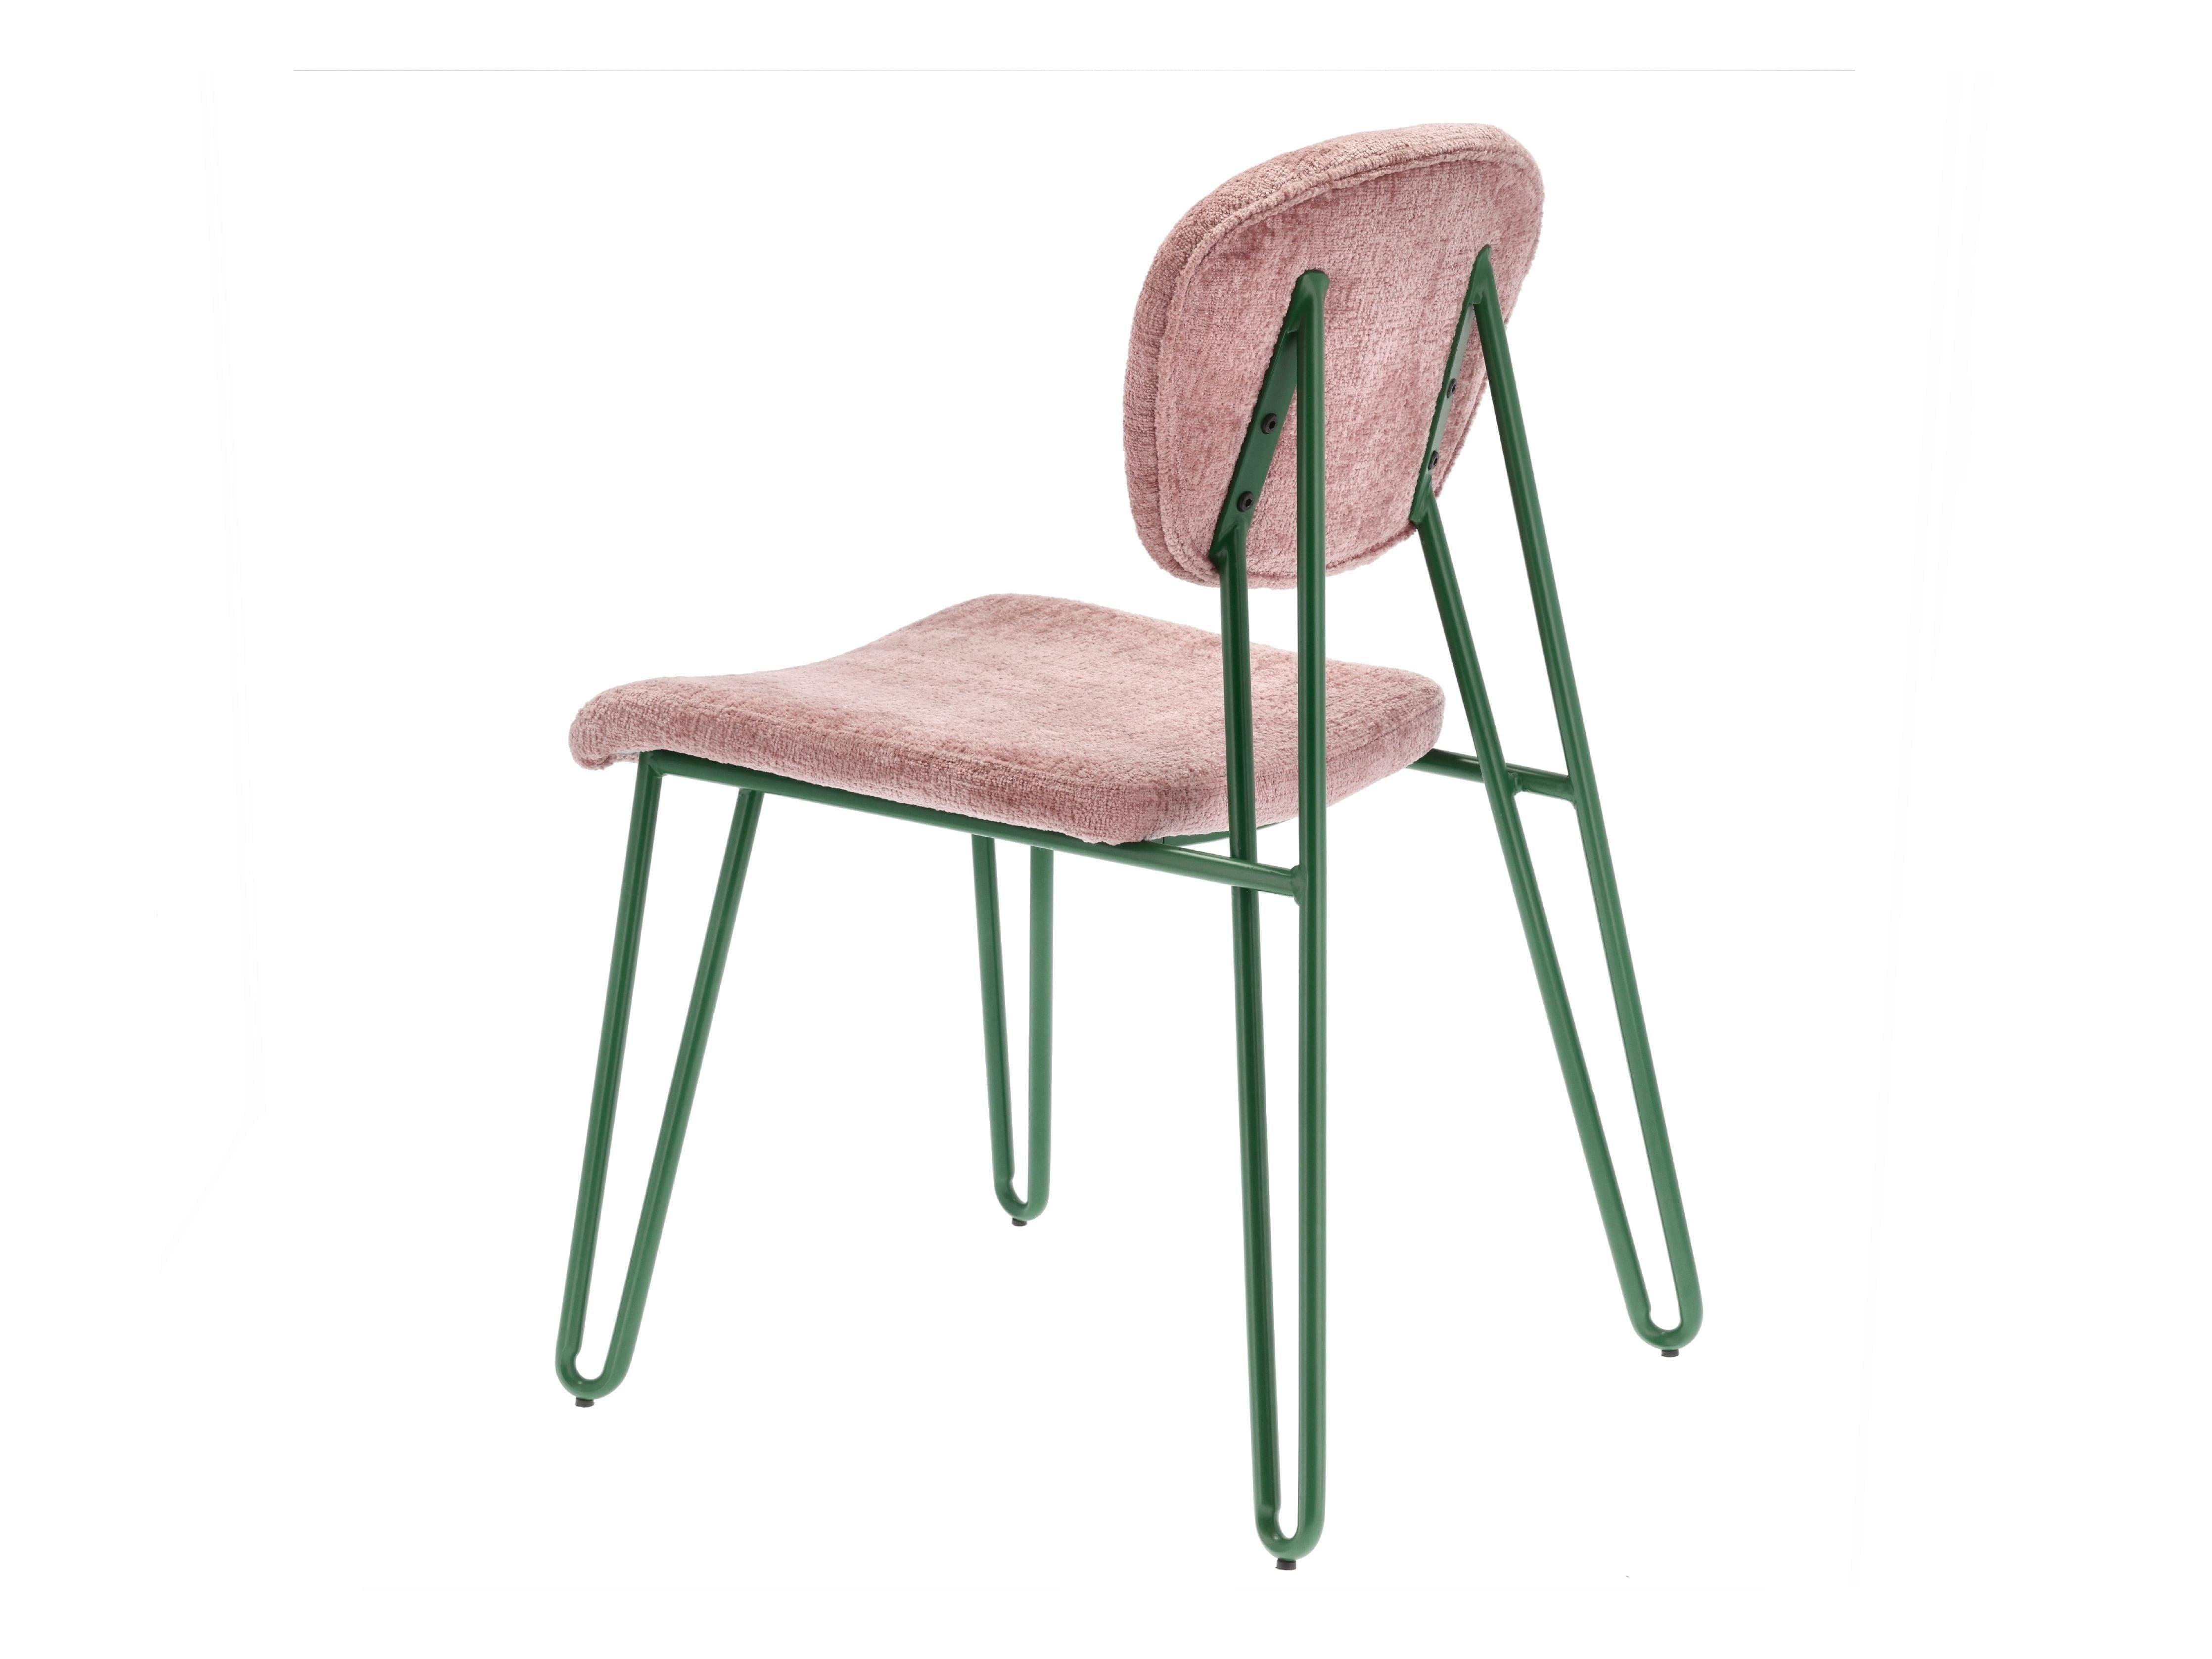 Villa samling stilar stol, grön/rosa